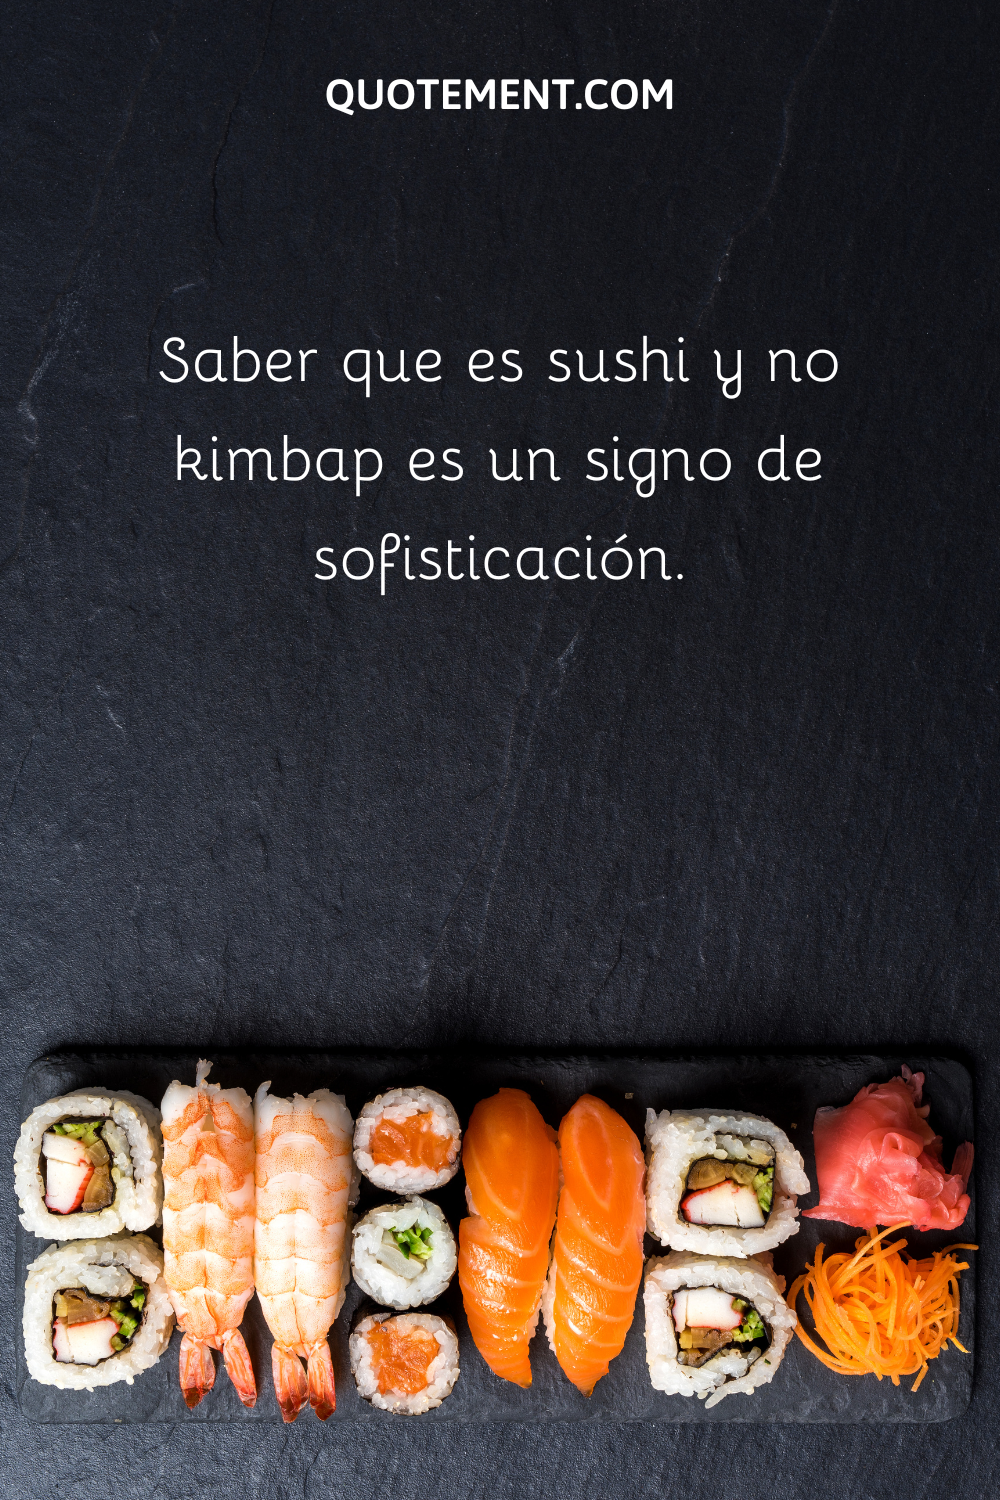 Saber que es sushi y no kimbap es un signo de sofisticación.